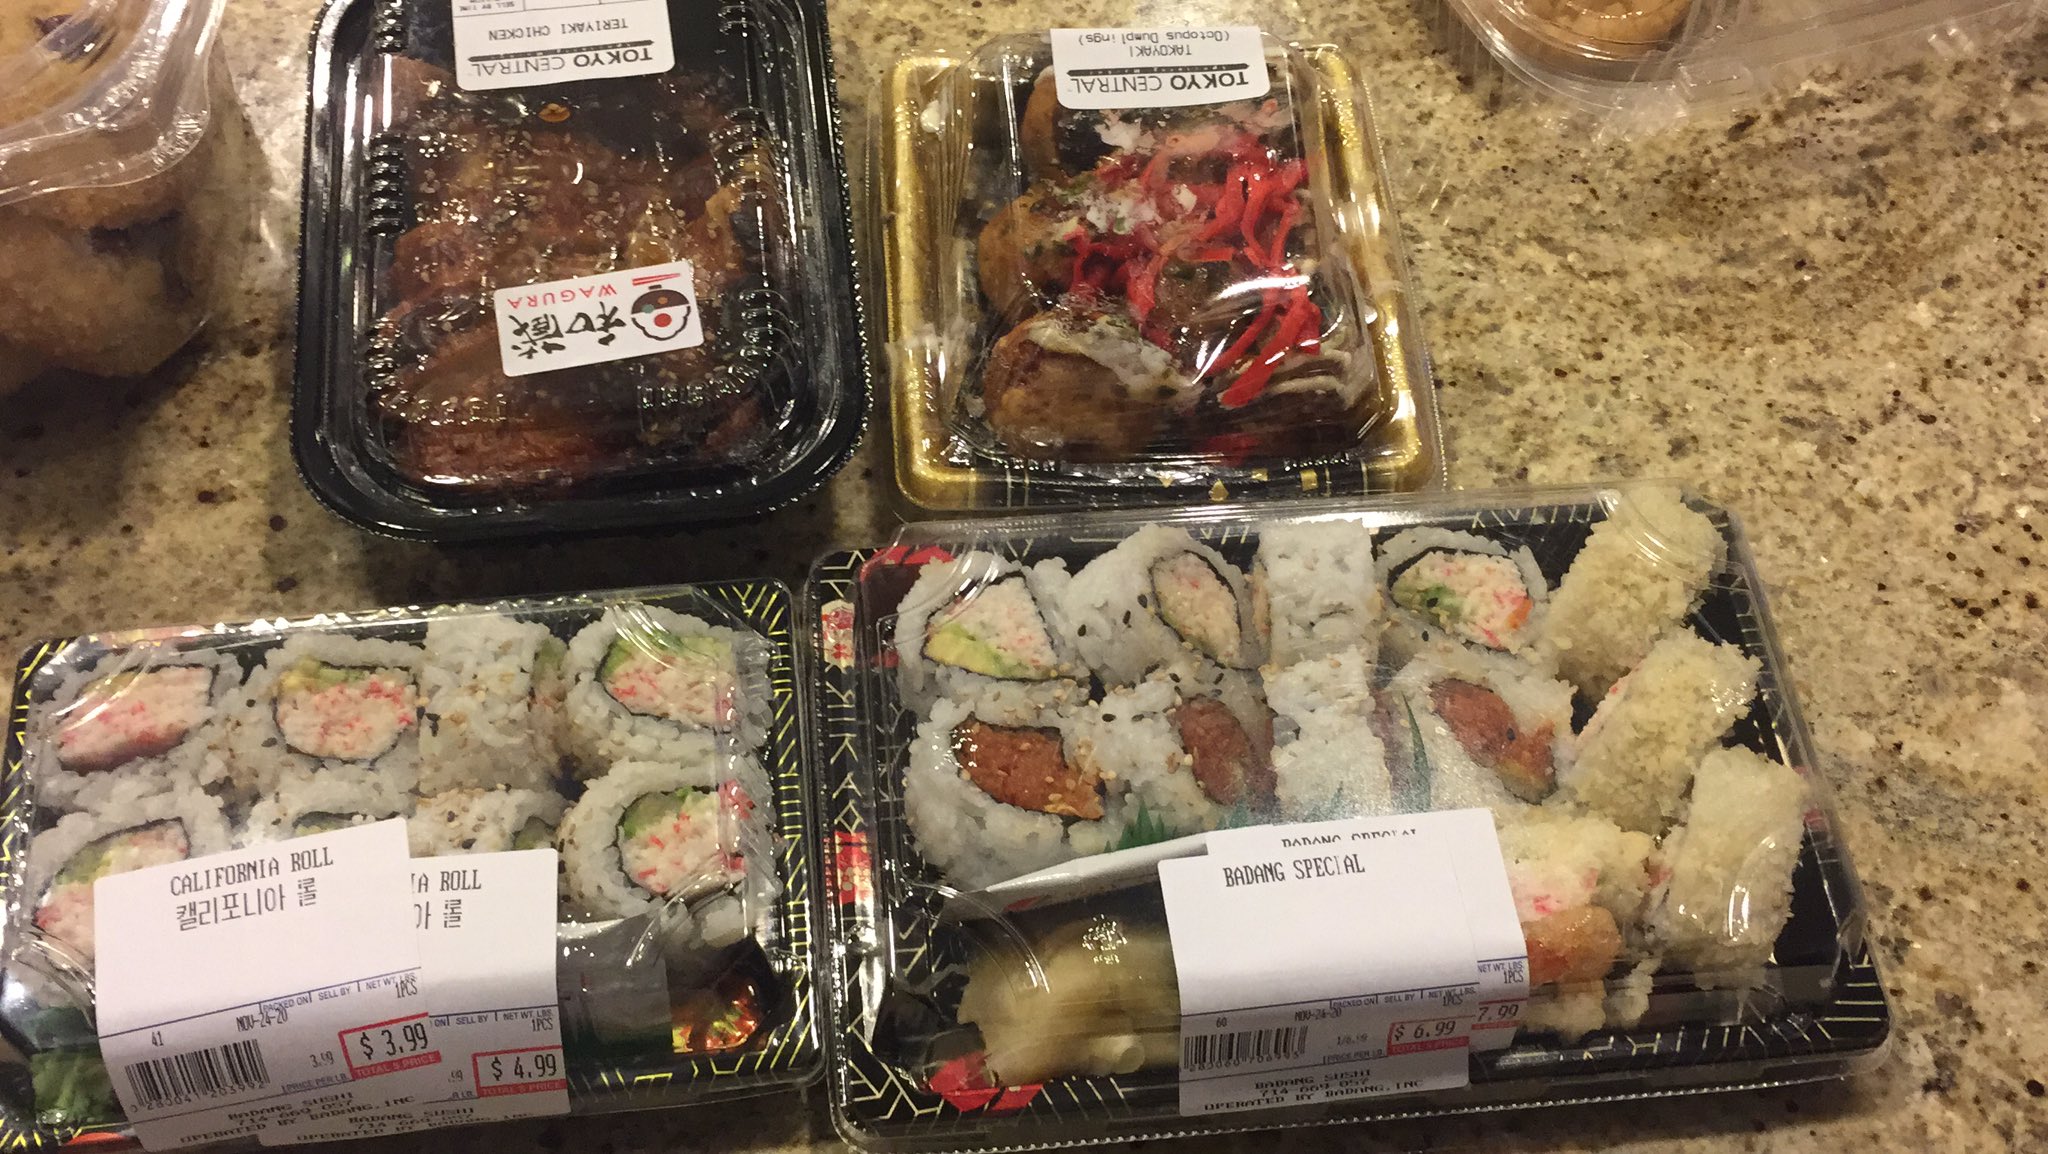 yay sushi! 